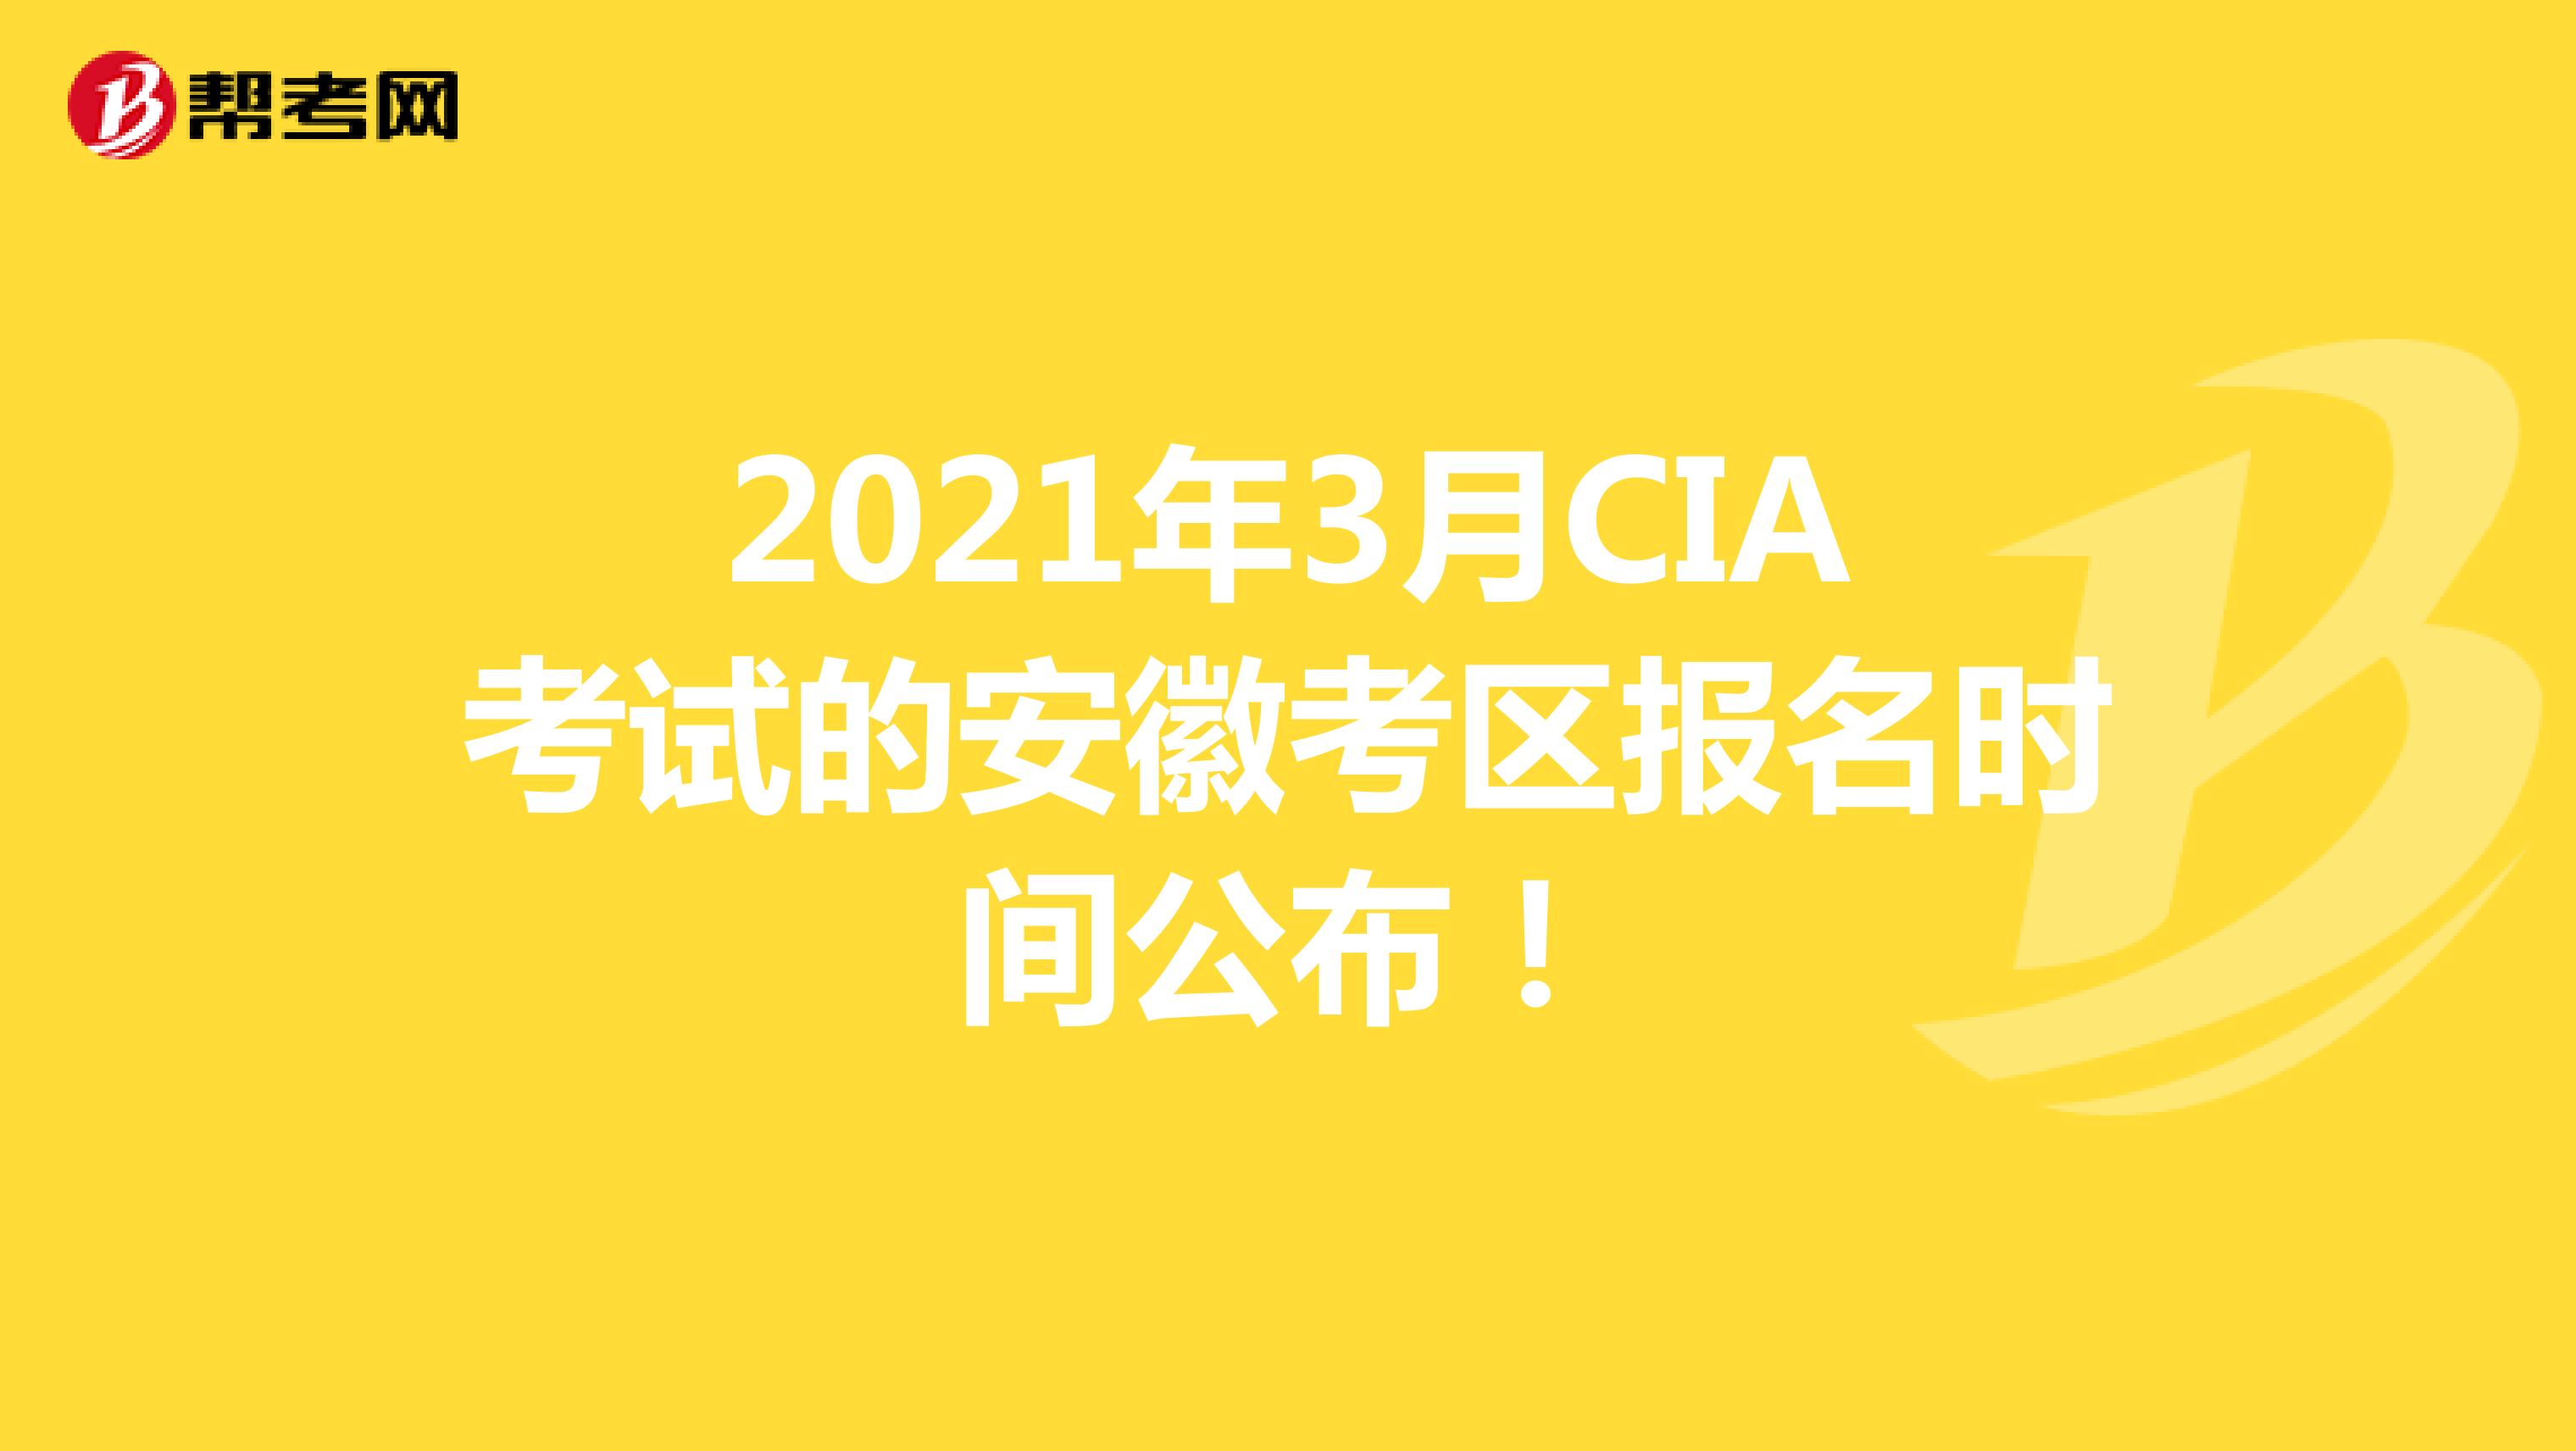 2021年3月CIA考试的安徽考区报名时间公布！